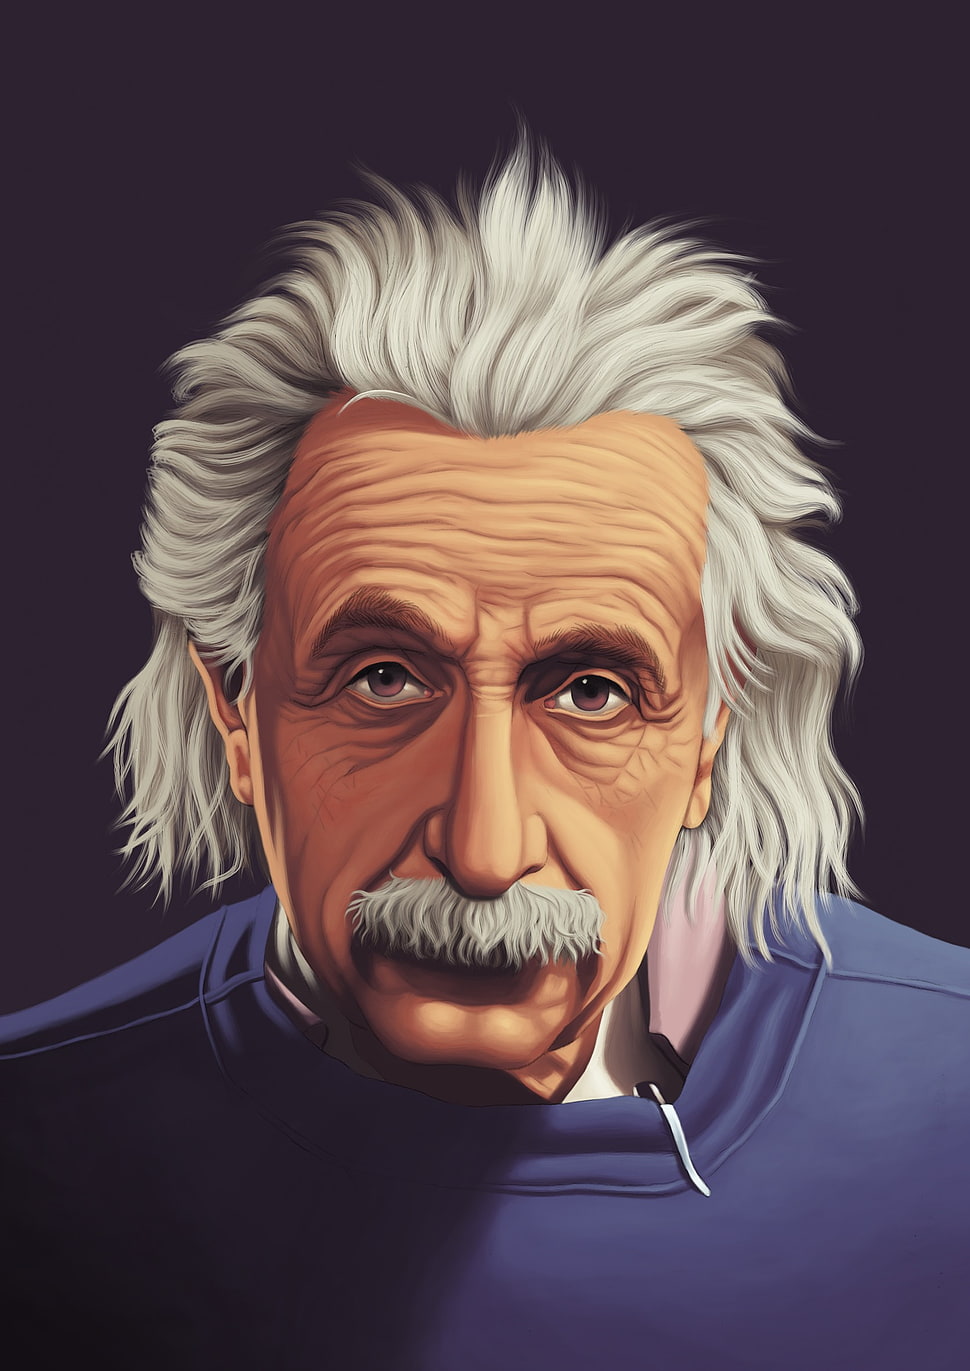 Einstein Drawing Images - Free Download on Freepik